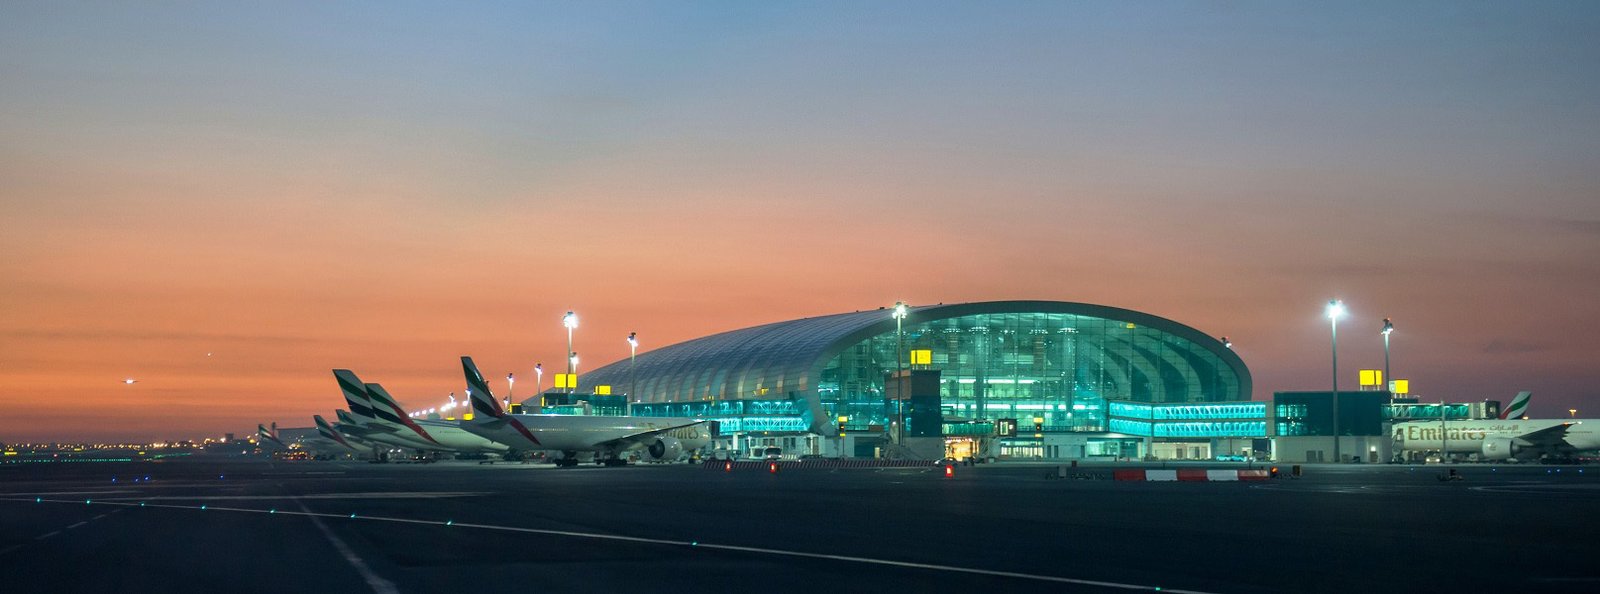 Como llegar a Dubái - Aeropuertos de Dubái y como moverse al centro